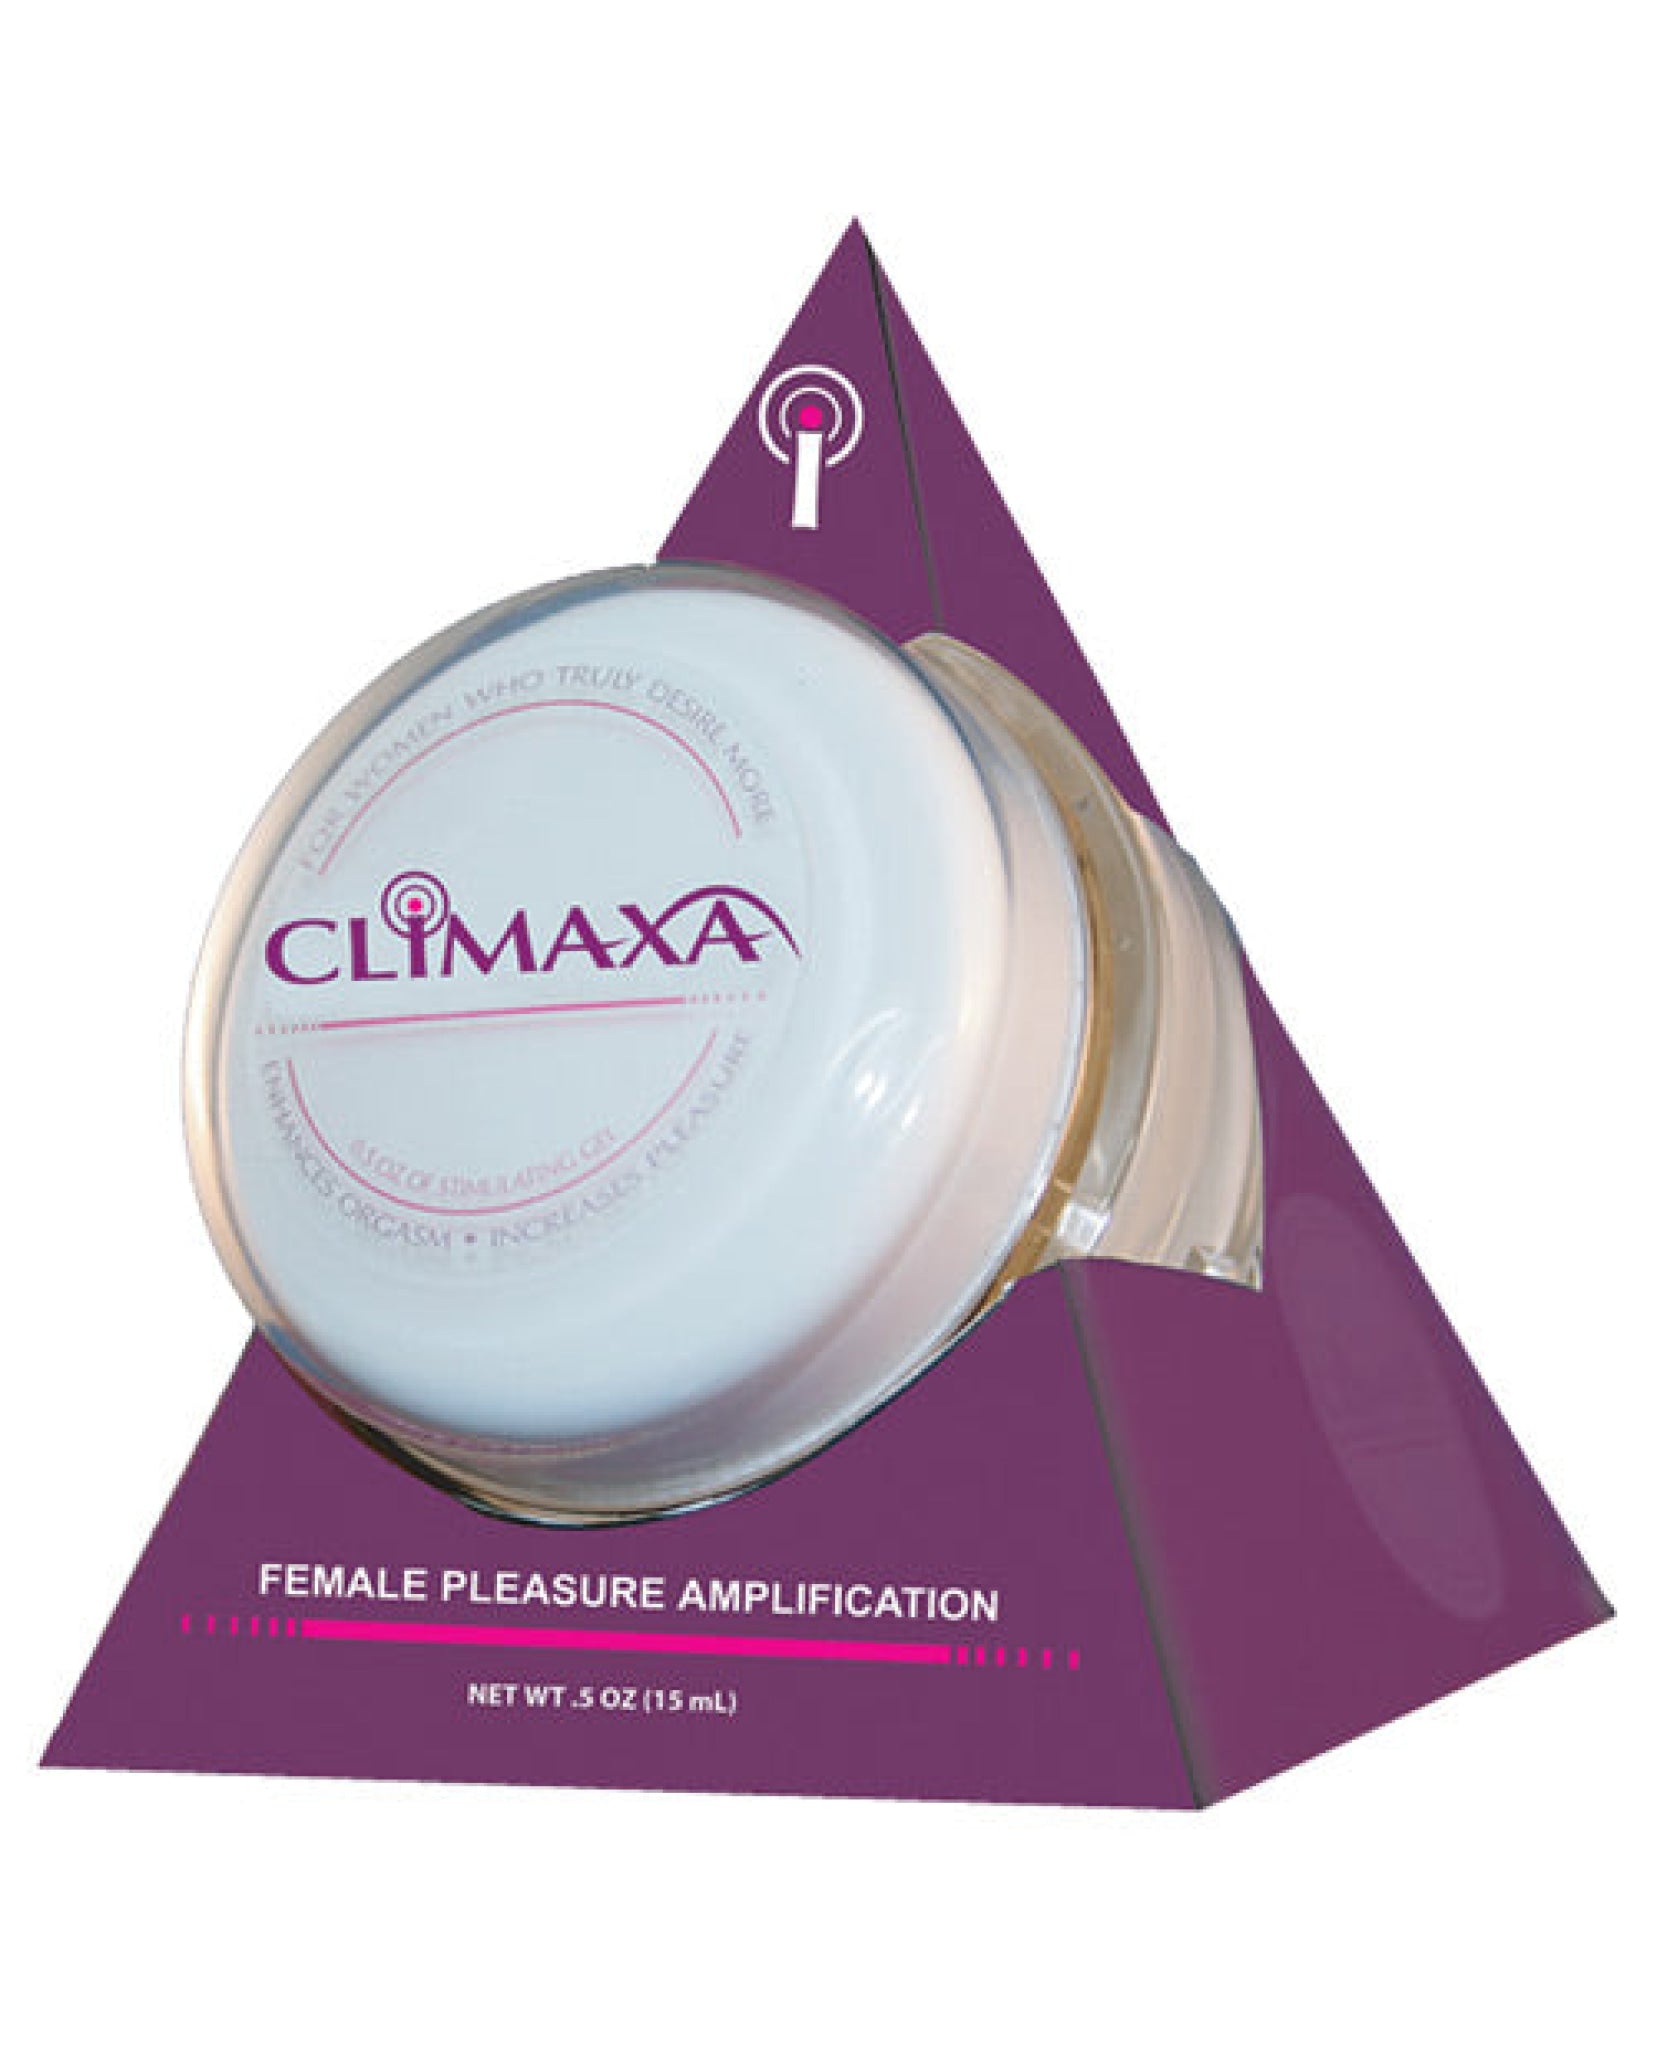 Climaxa Stimulating Gel - .5 Oz Jar Body Action